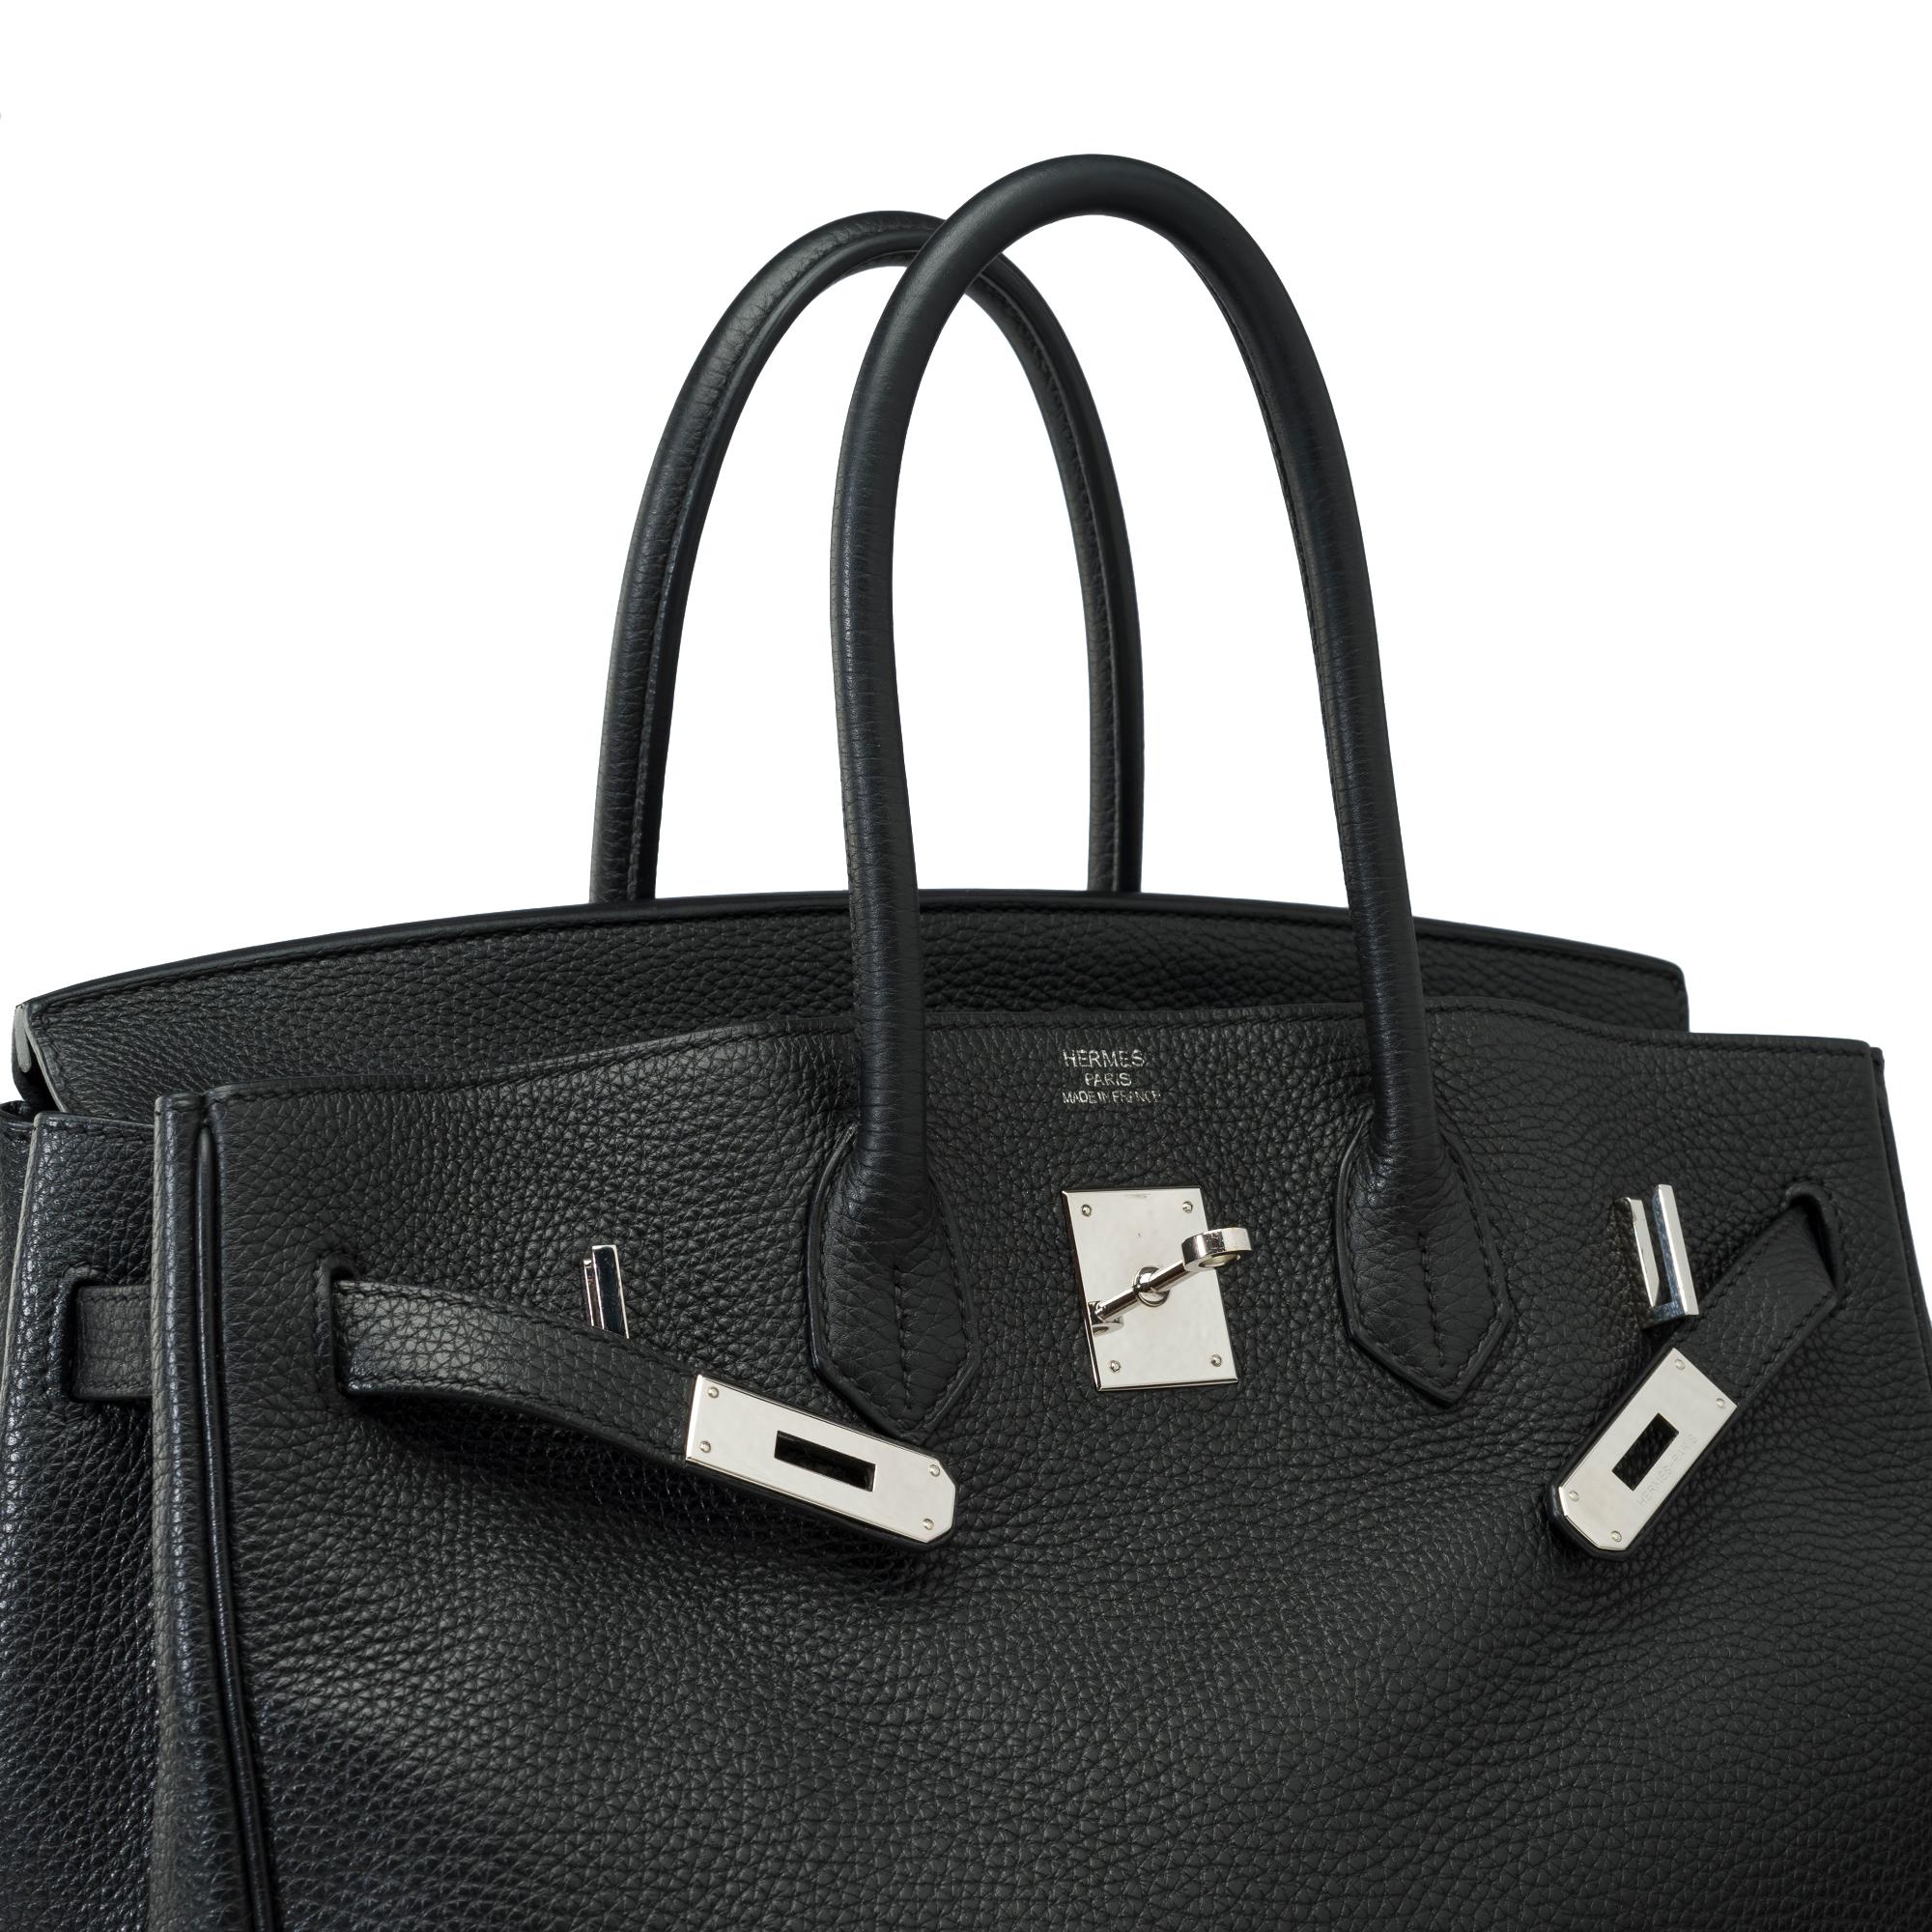 Stunning Hermes Birkin 30 handbag in Black Togo leather, SHW For Sale 3